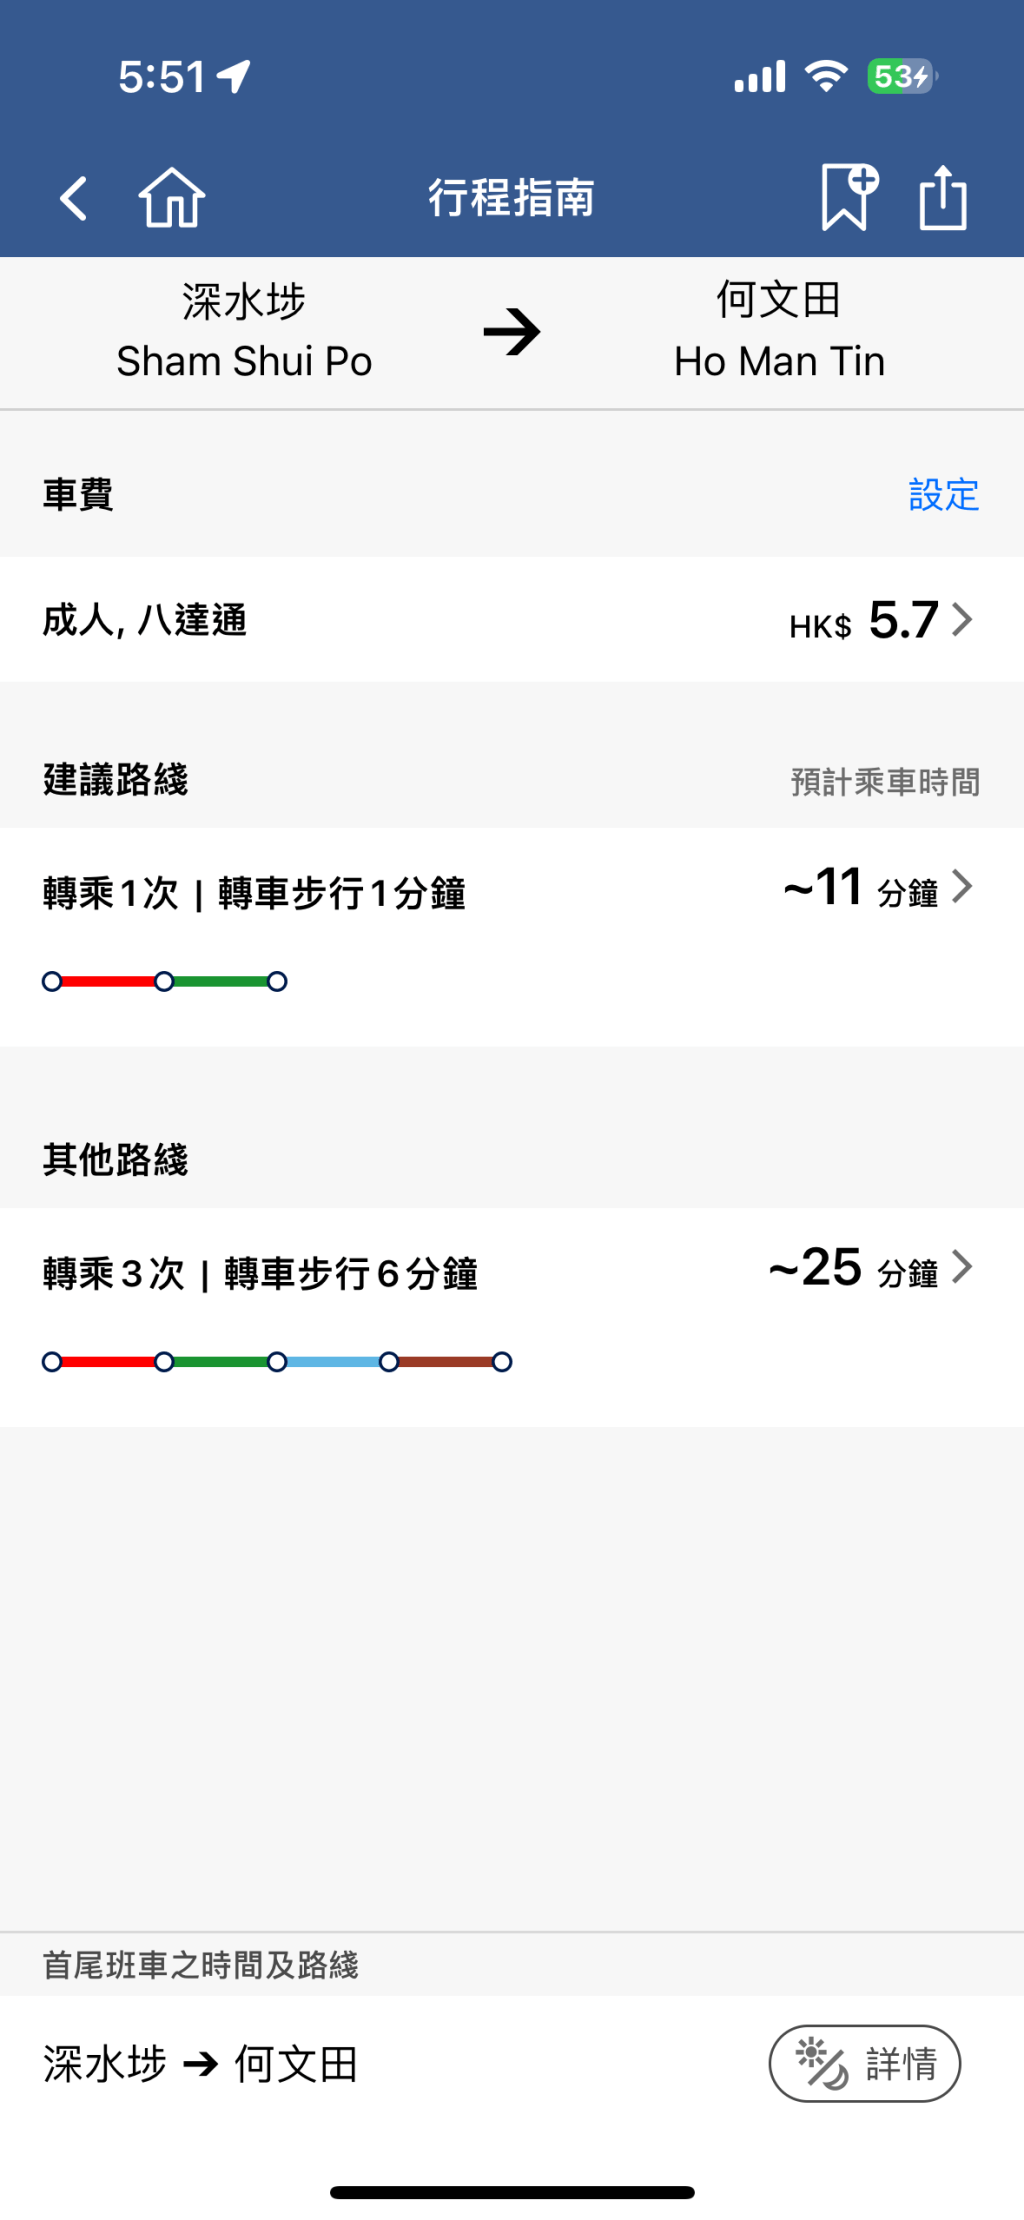 乘客若想从深水埗站去何文田站，根据港铁APP行程指南，原本应在旺角站转车，仅需时11分钟。